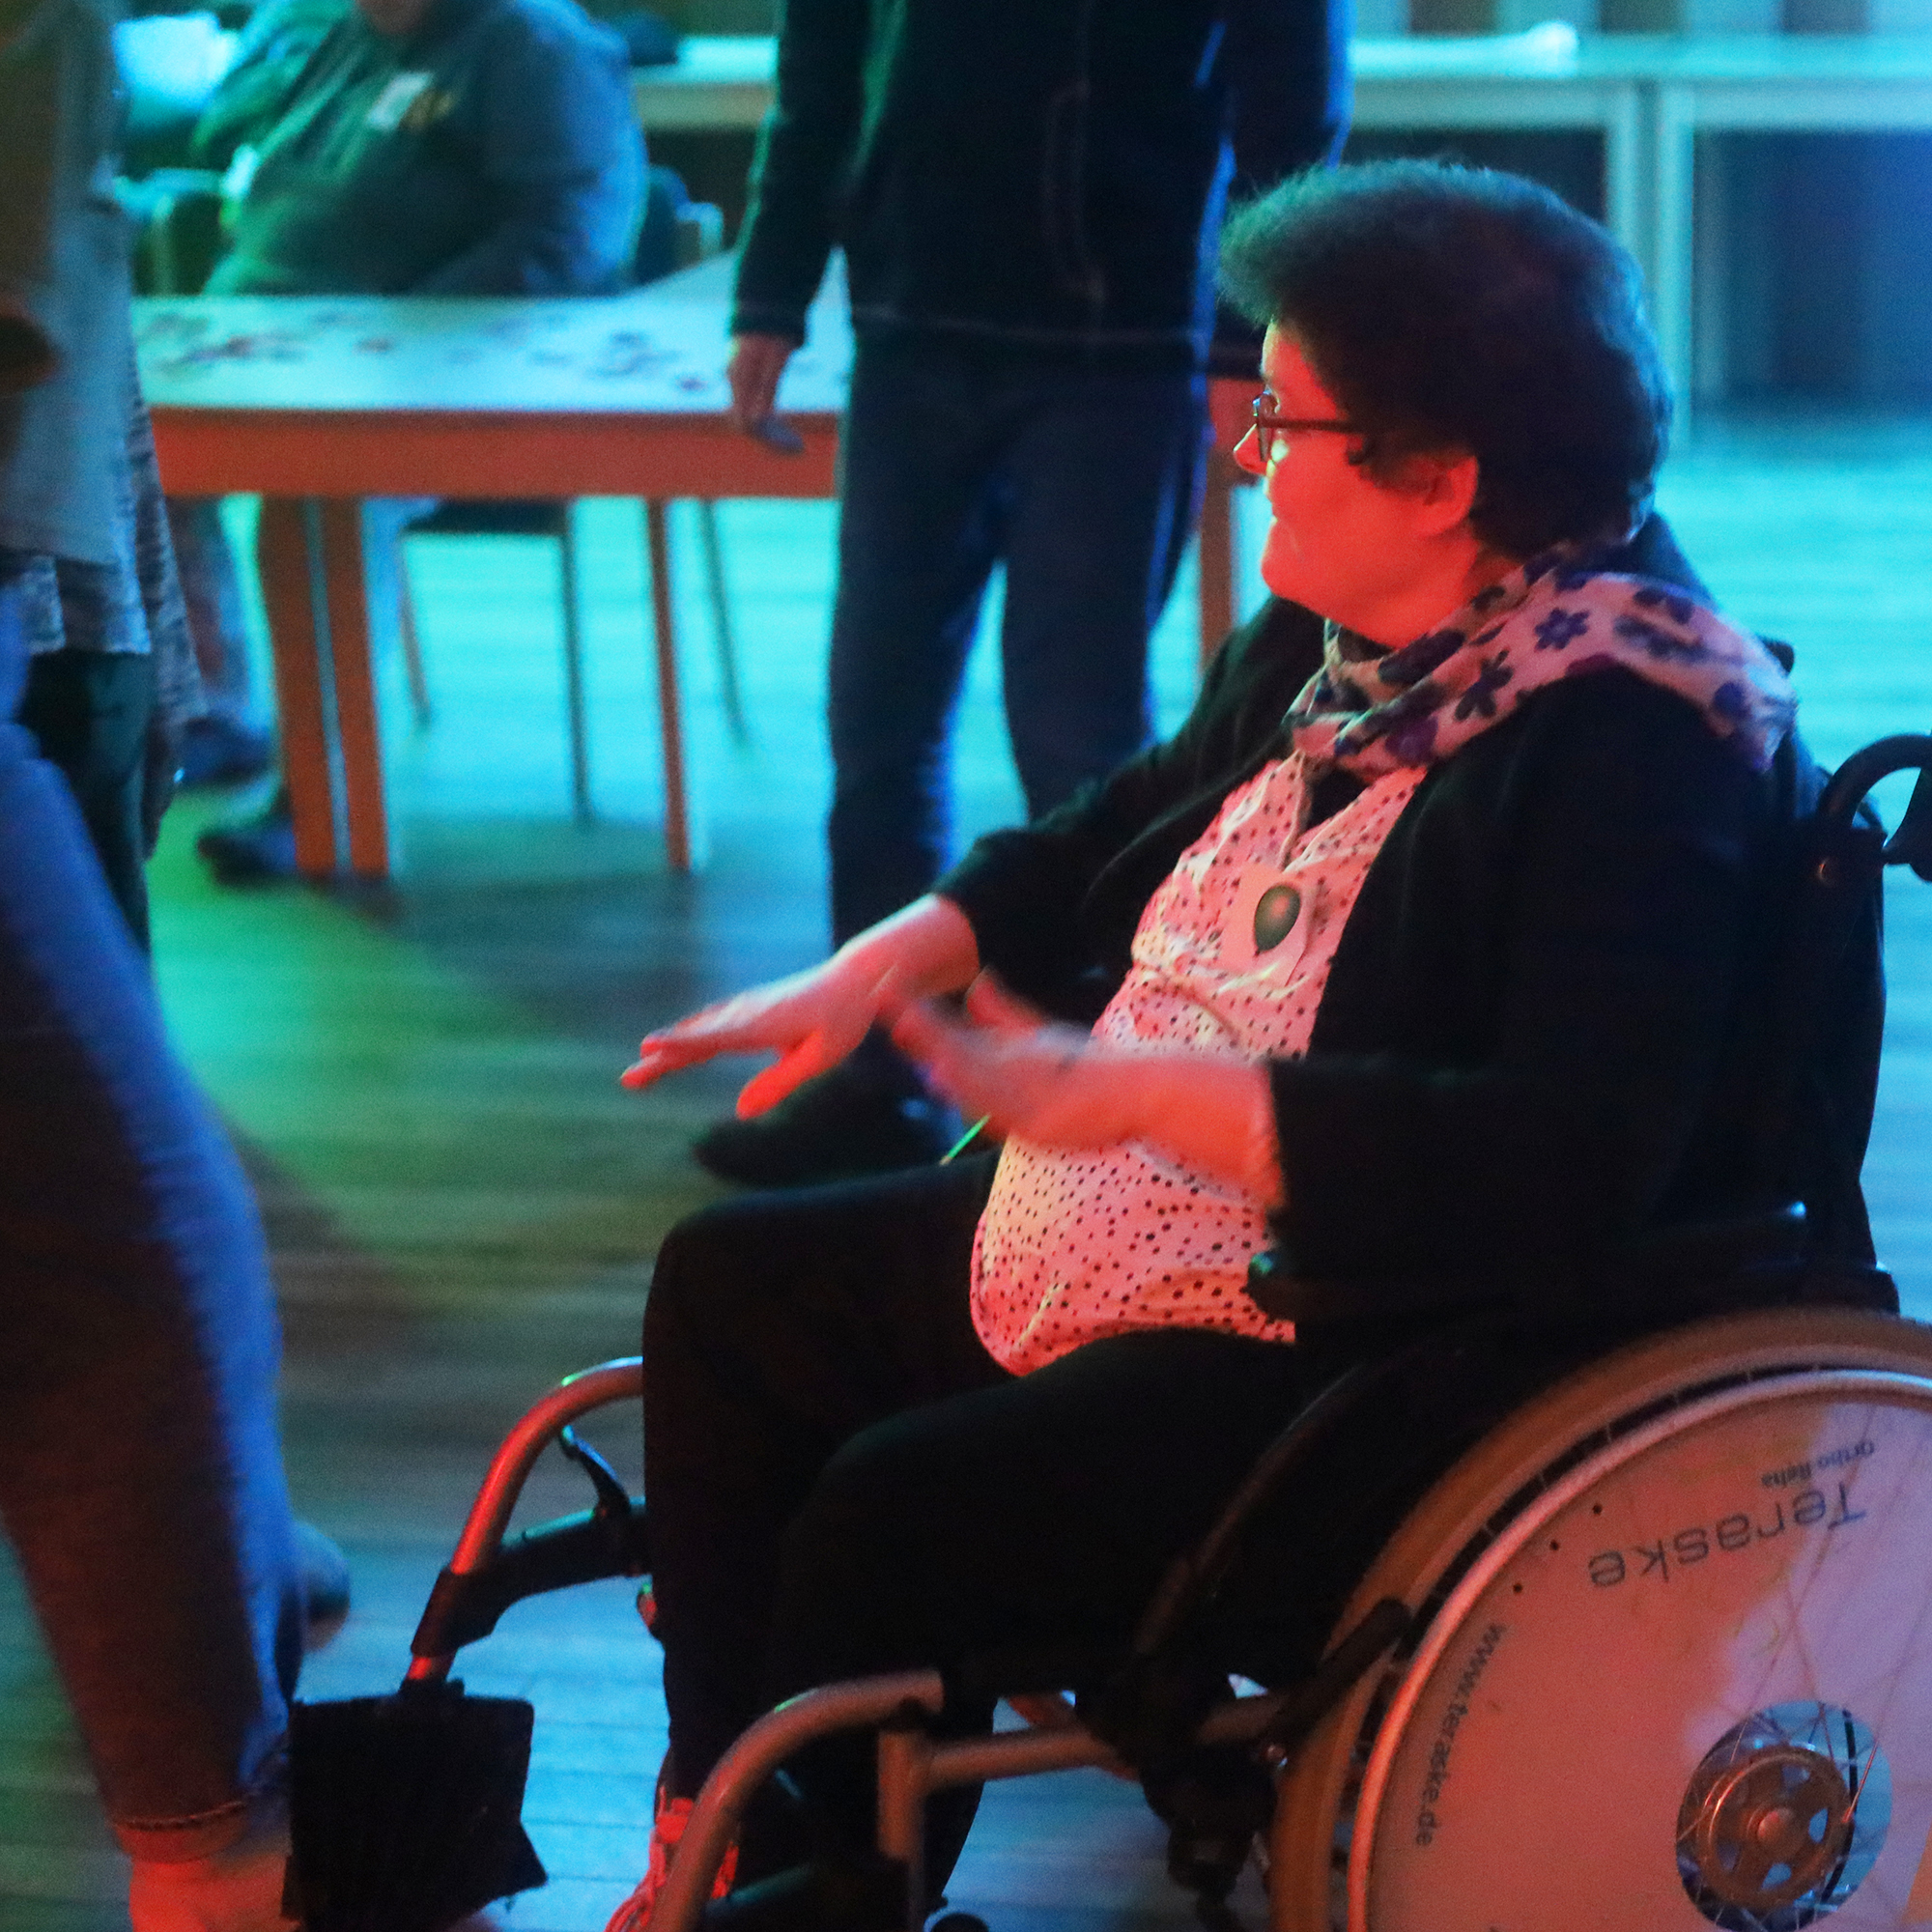 Eine Frau im Rollstuhl ist auf einer Party. Sie hebt die Hände zur Musik.